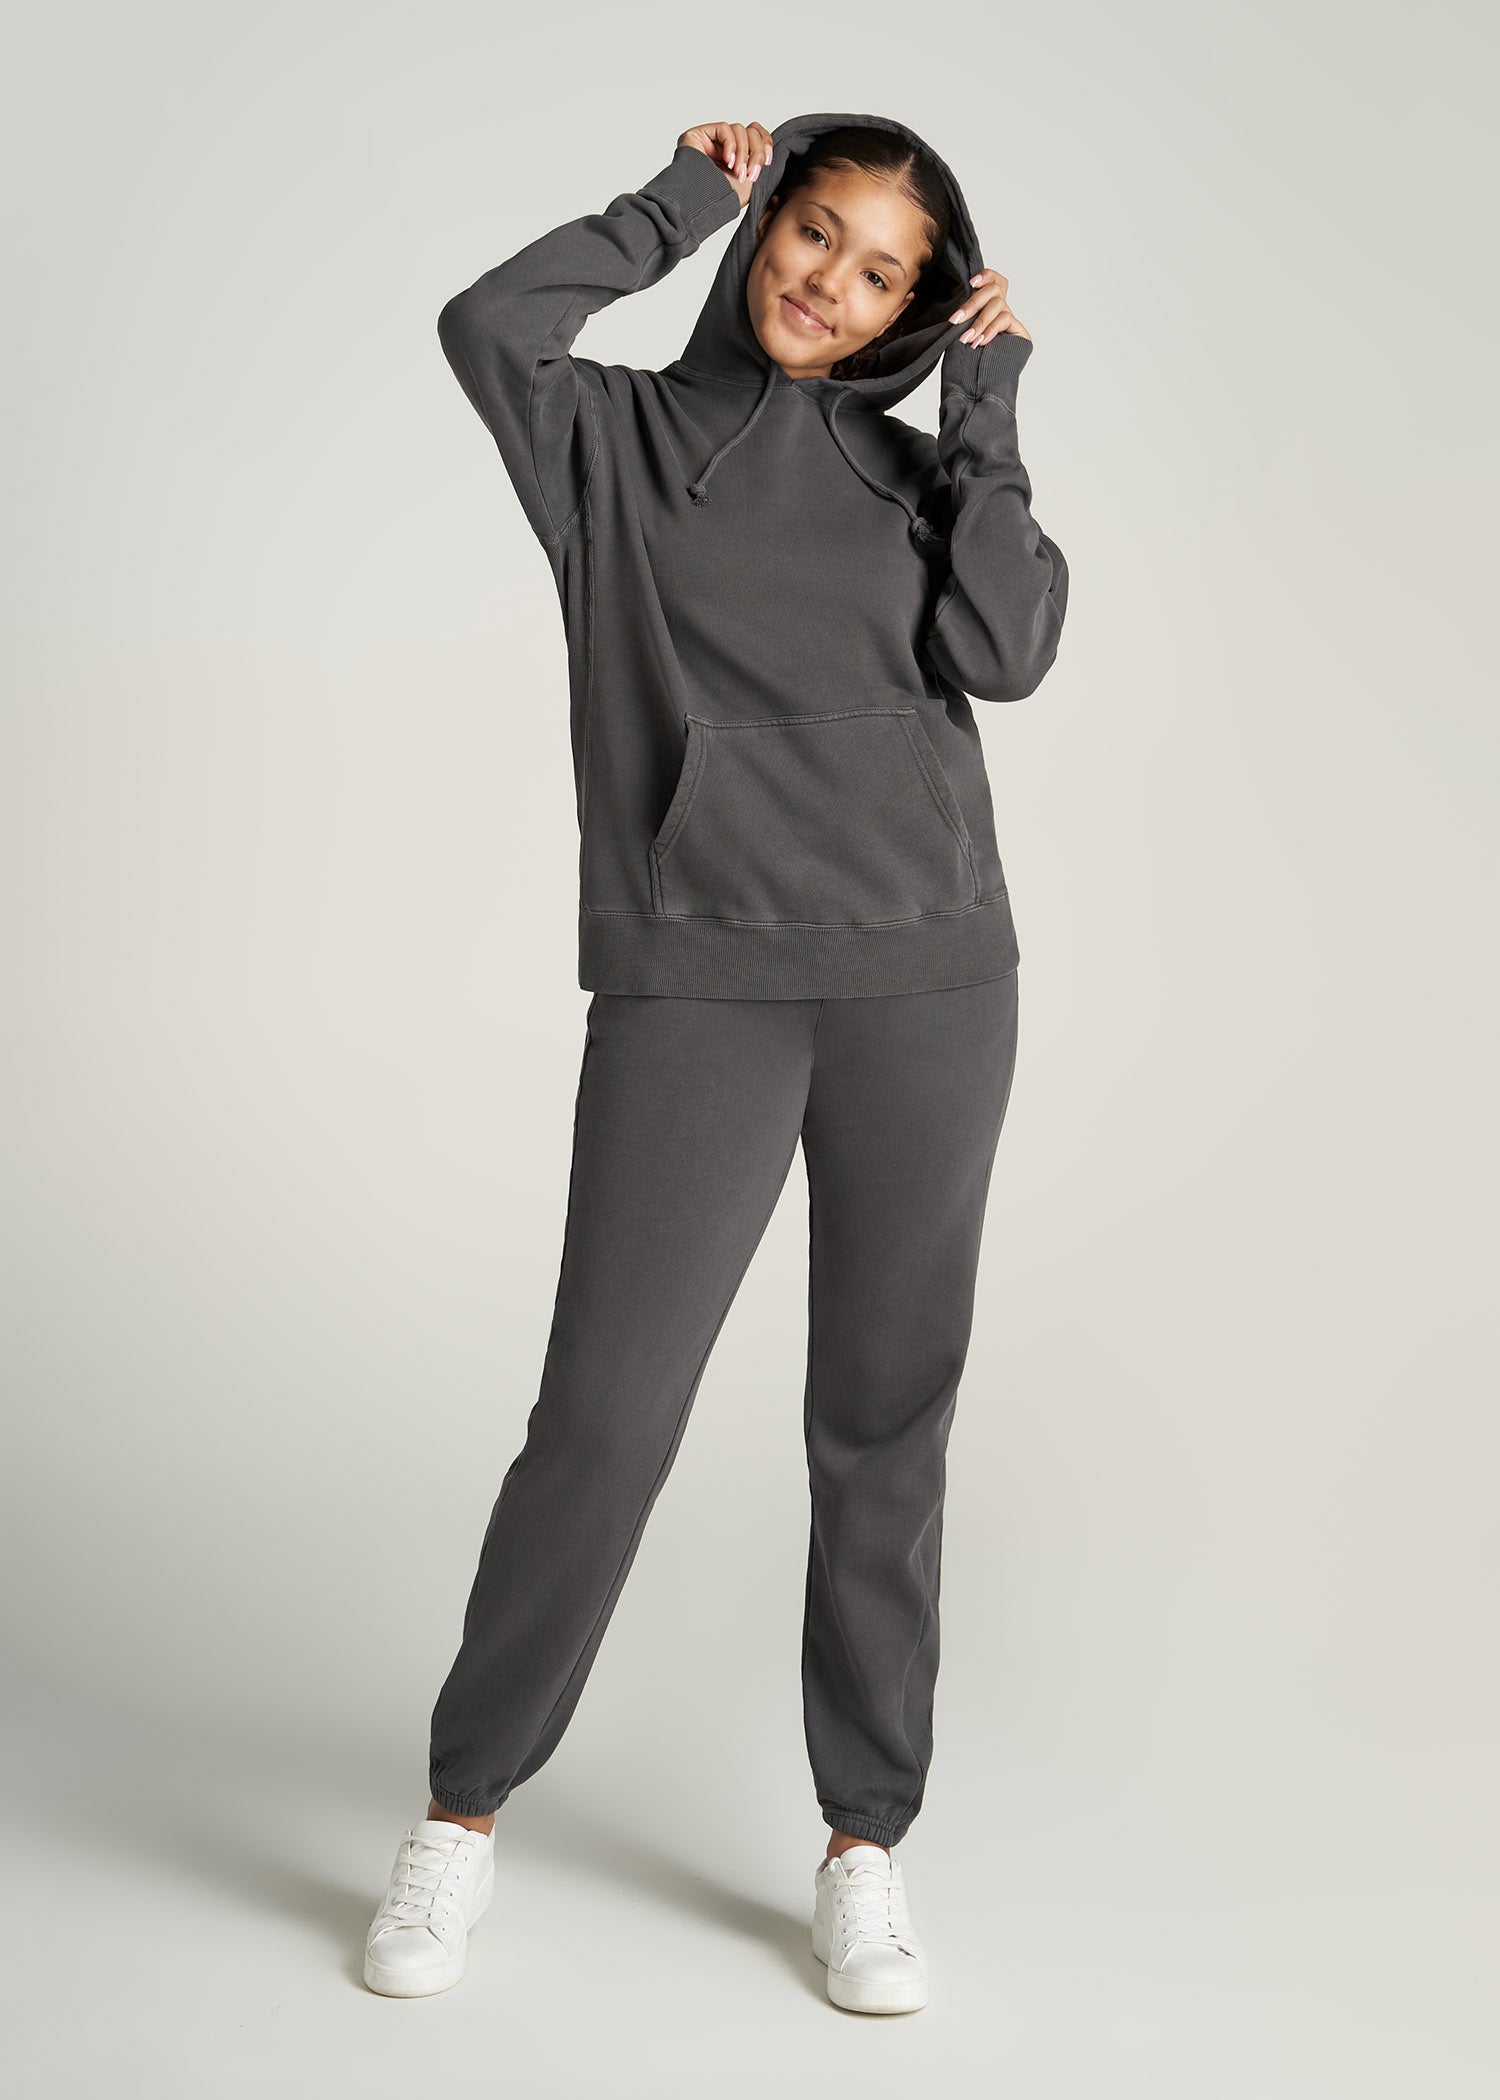 Wearever Fleece Regular Fit Women's Tall Sweatpants in Charcoal